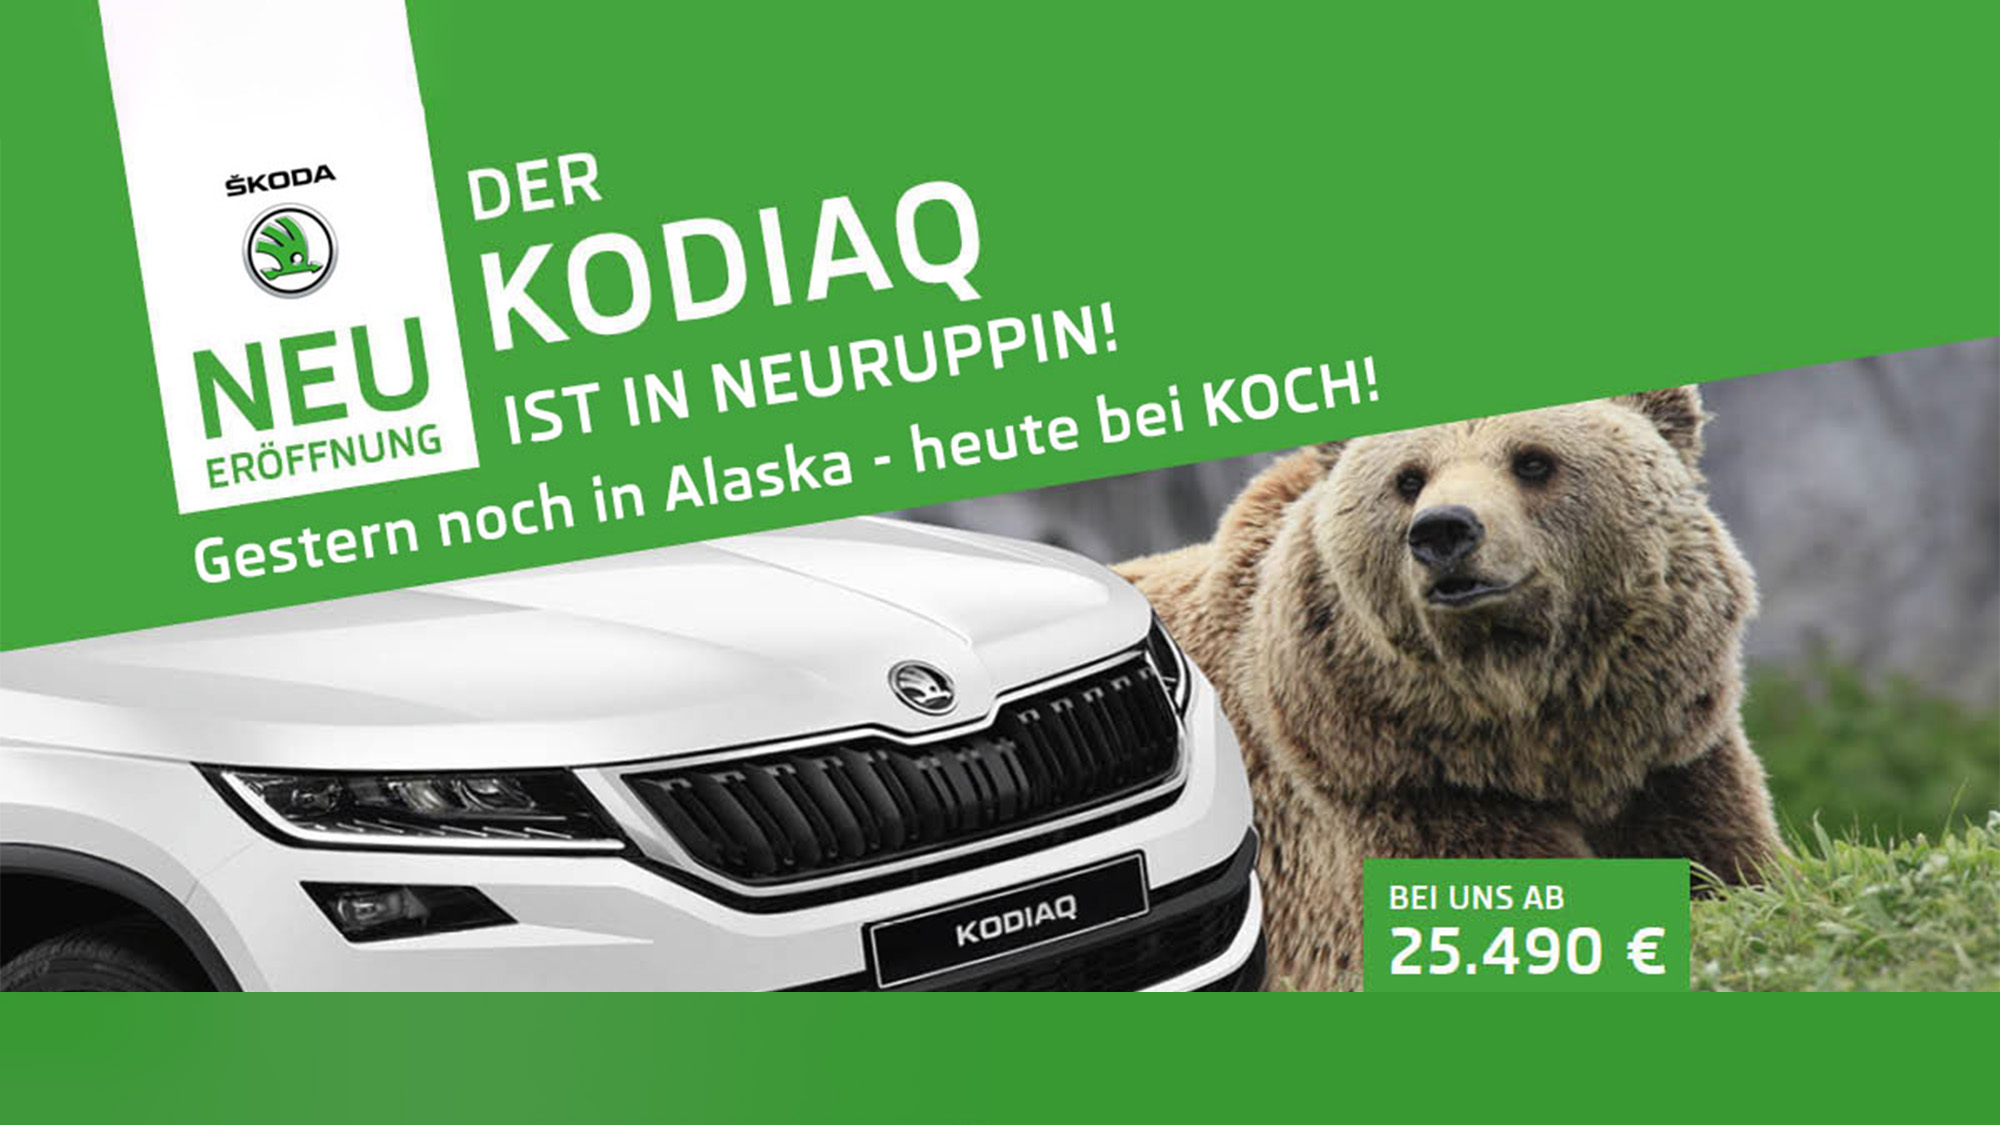 Neuruppin ist sechster Skoda-Standort von Koch  Autos kauft man bei Koch -  gute Preise guter Service